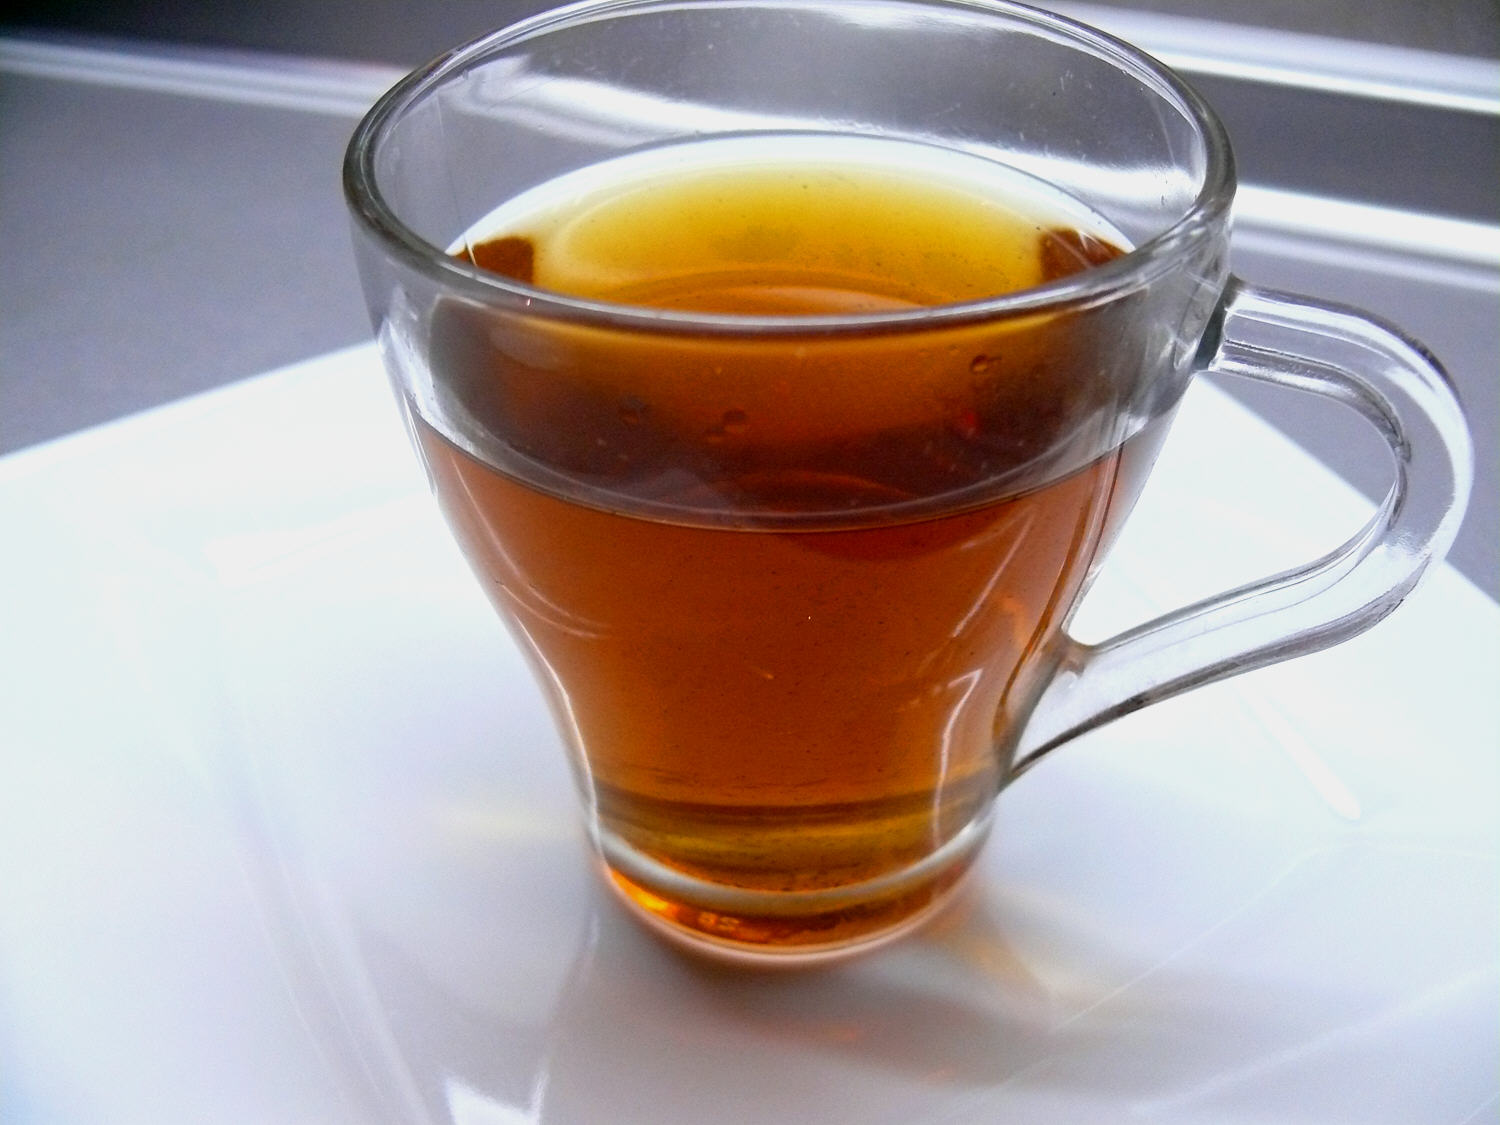 שיטת הקשחת עלי תה לקראת התסיסה